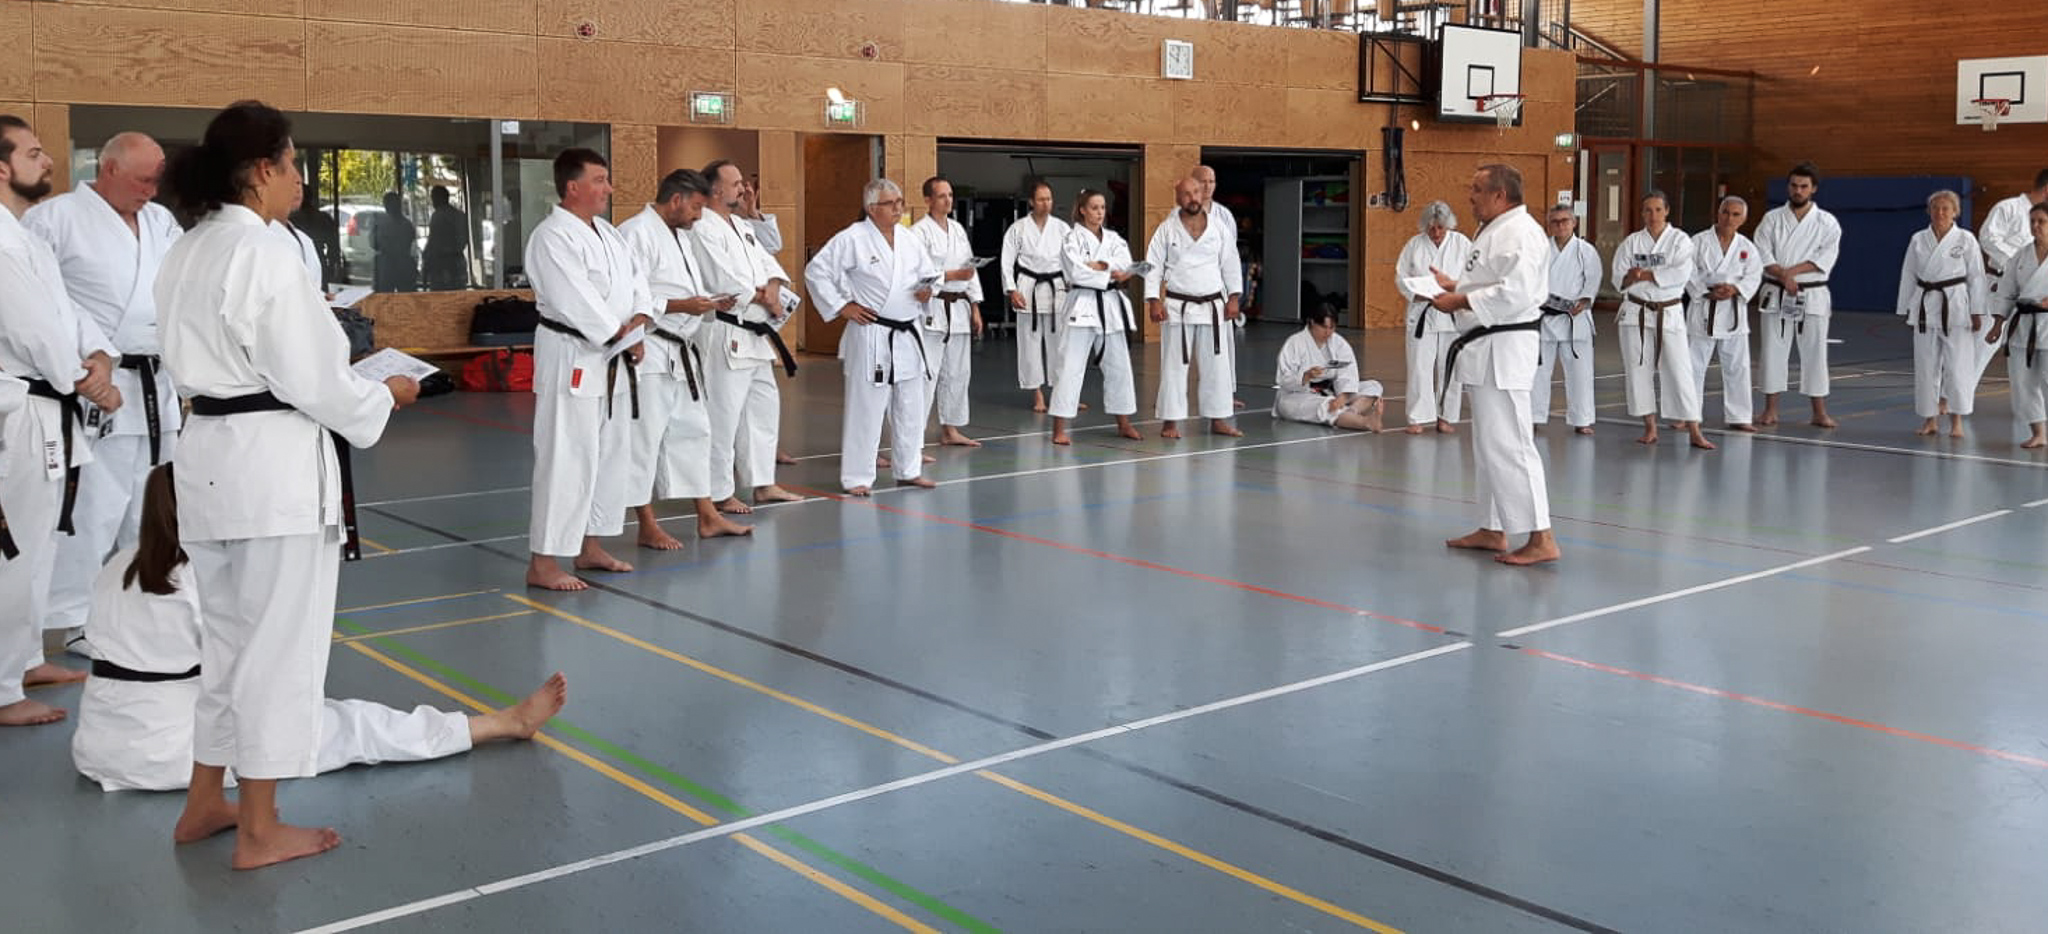 40 Jahre GOJU-Ryu in Herxheim 